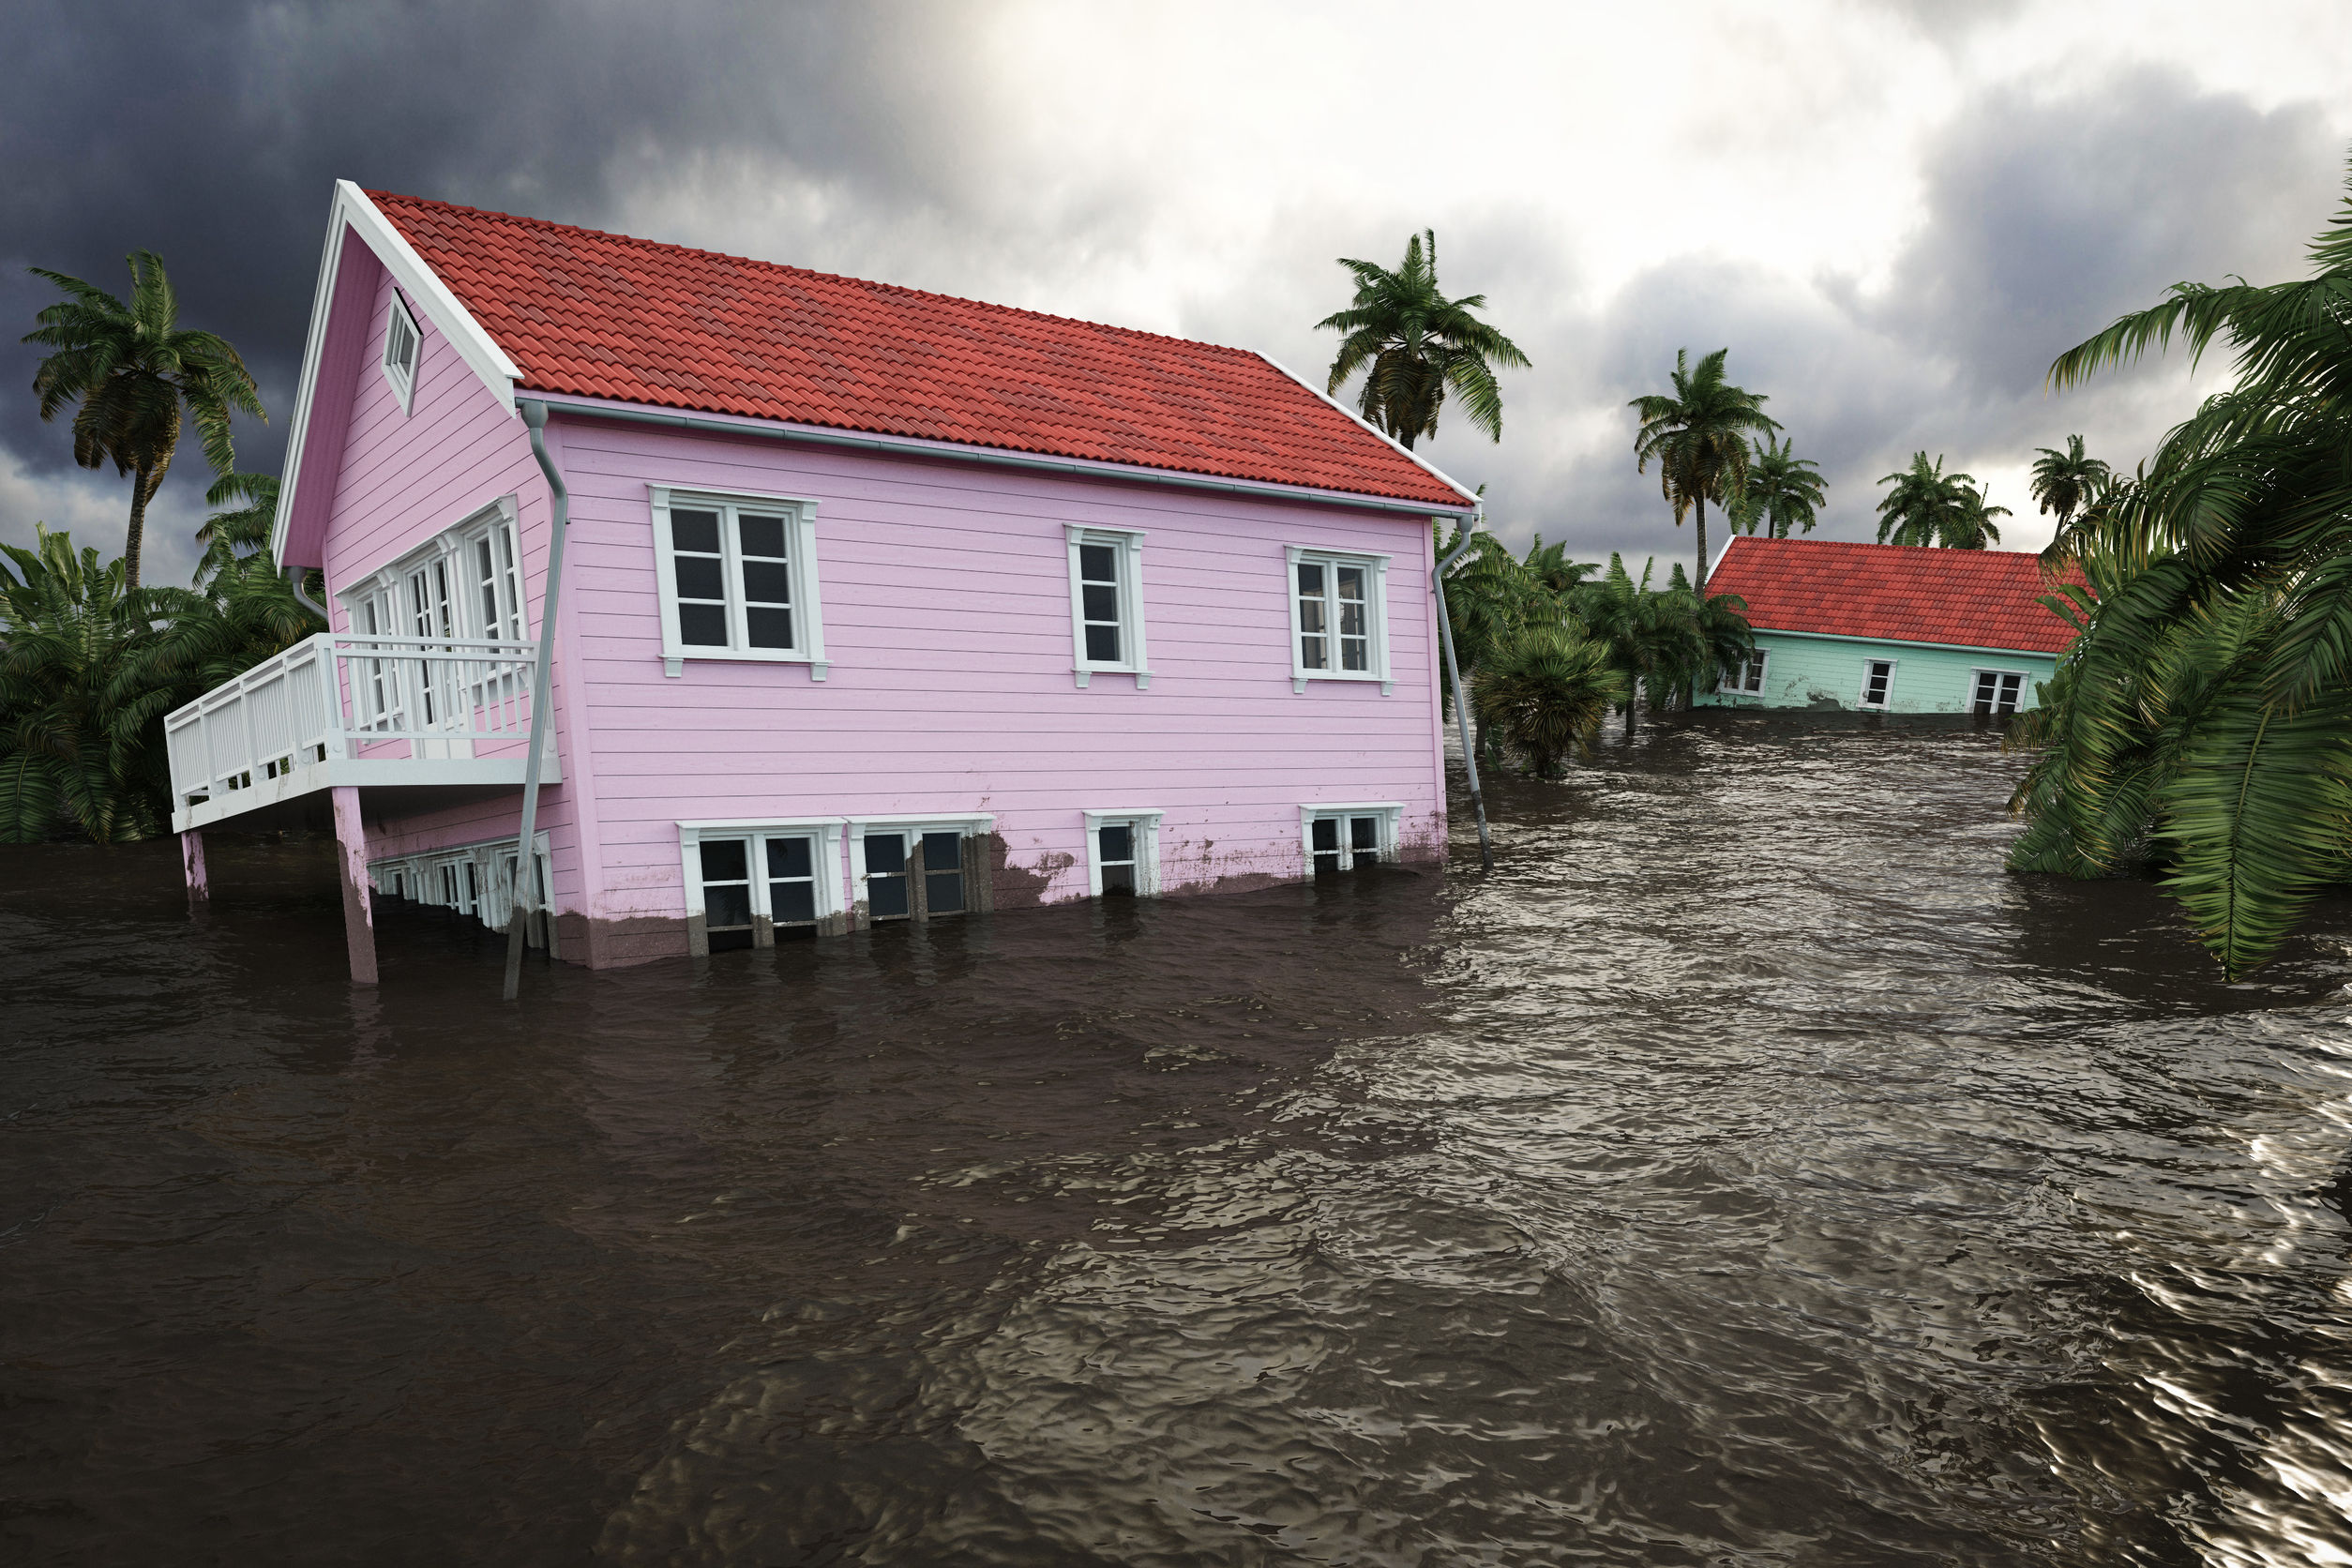 Flooding houses. Photo: Monika Mlynek